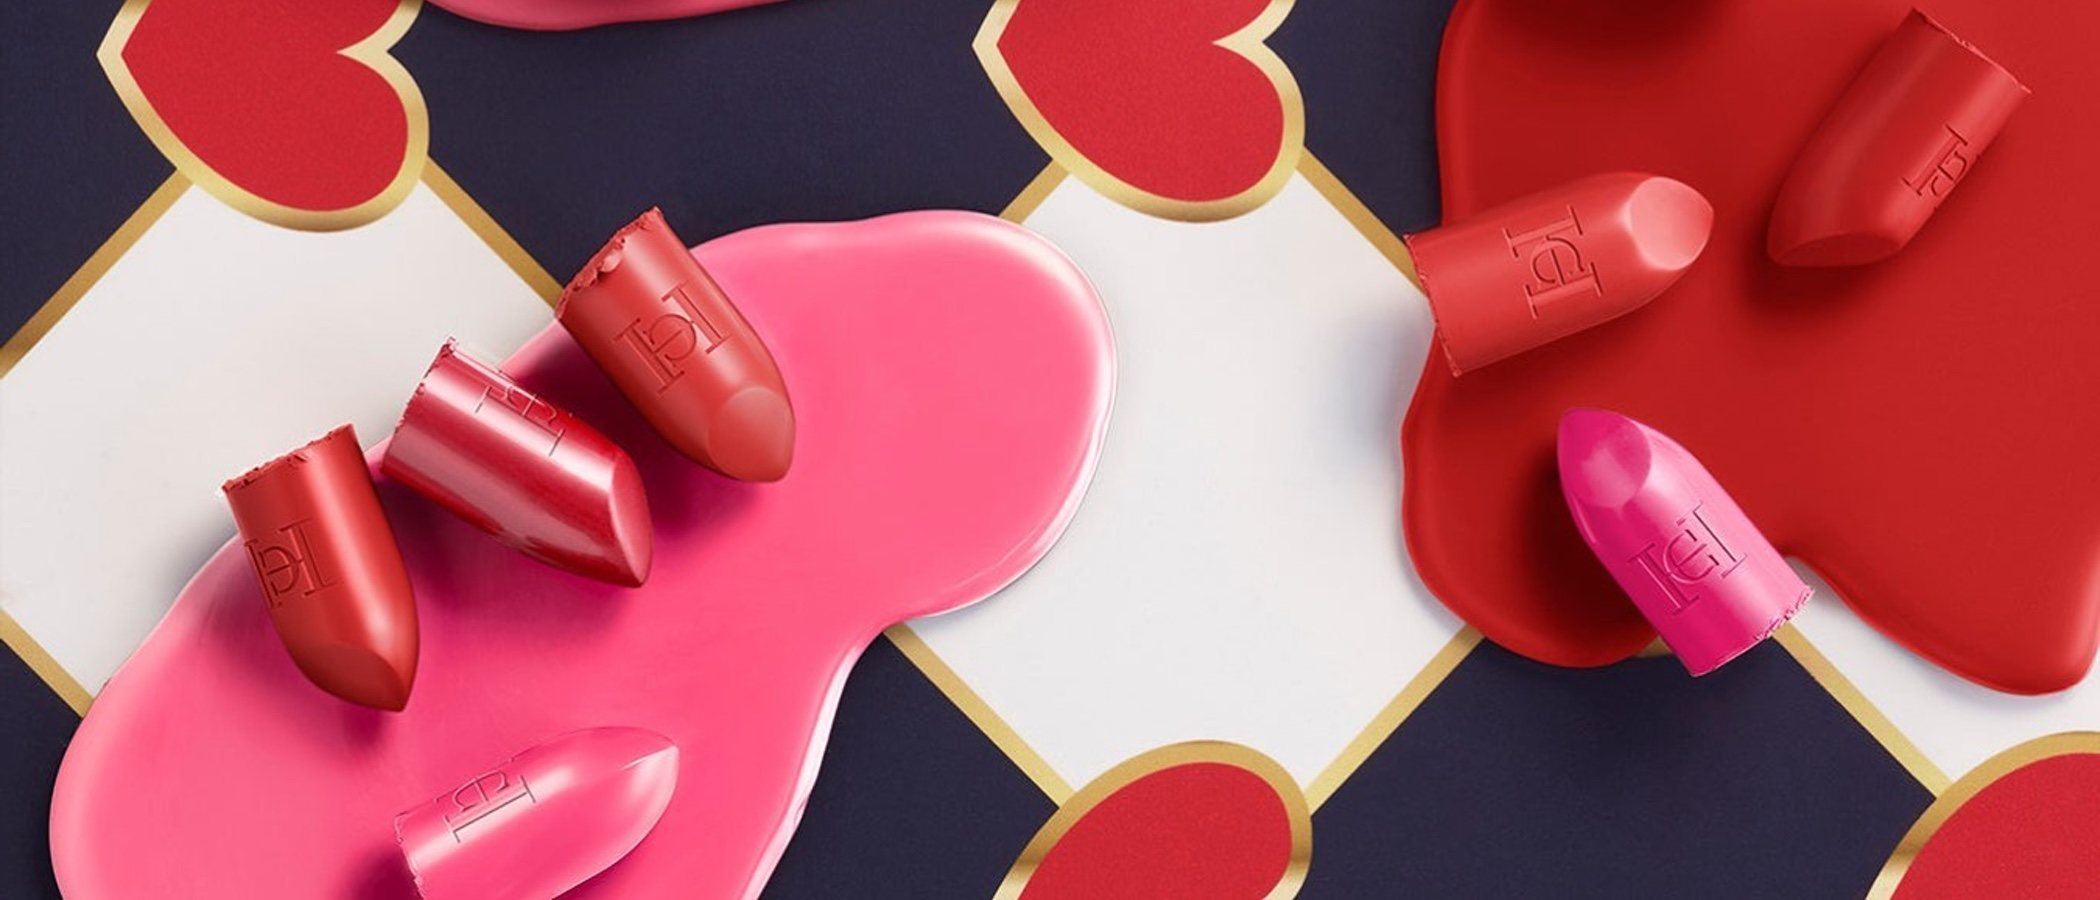 Los labiales 'Fabulous Kiss' con los que Carolina Herrera pone color a tu San Valentín 2021